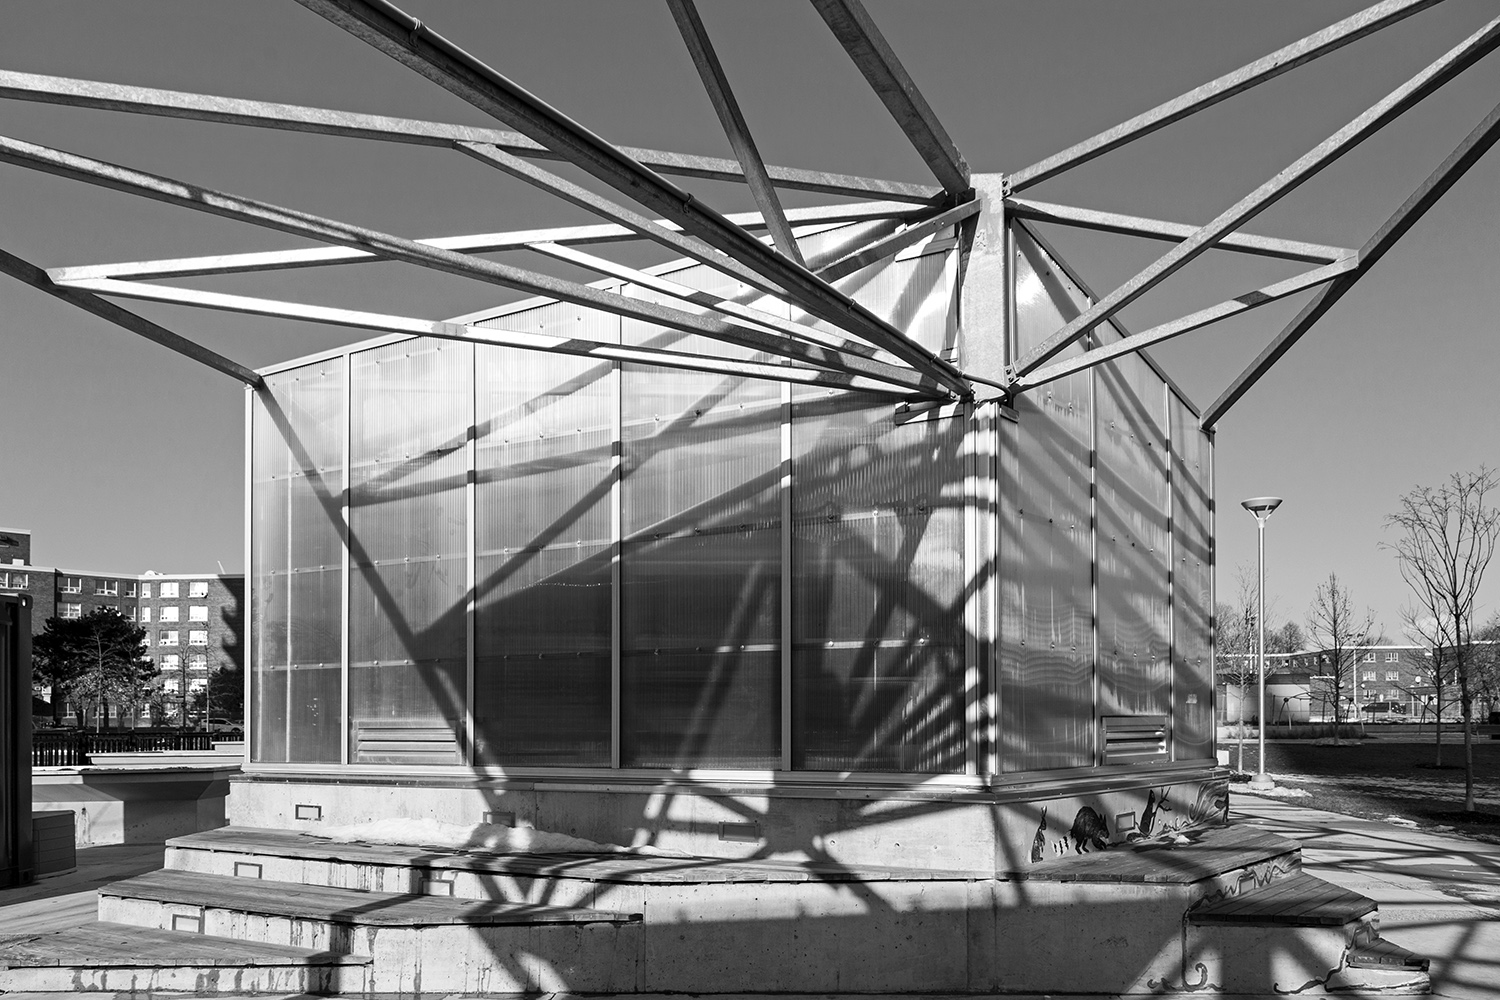 20170103. Regent Park's new park features this neat structure ho